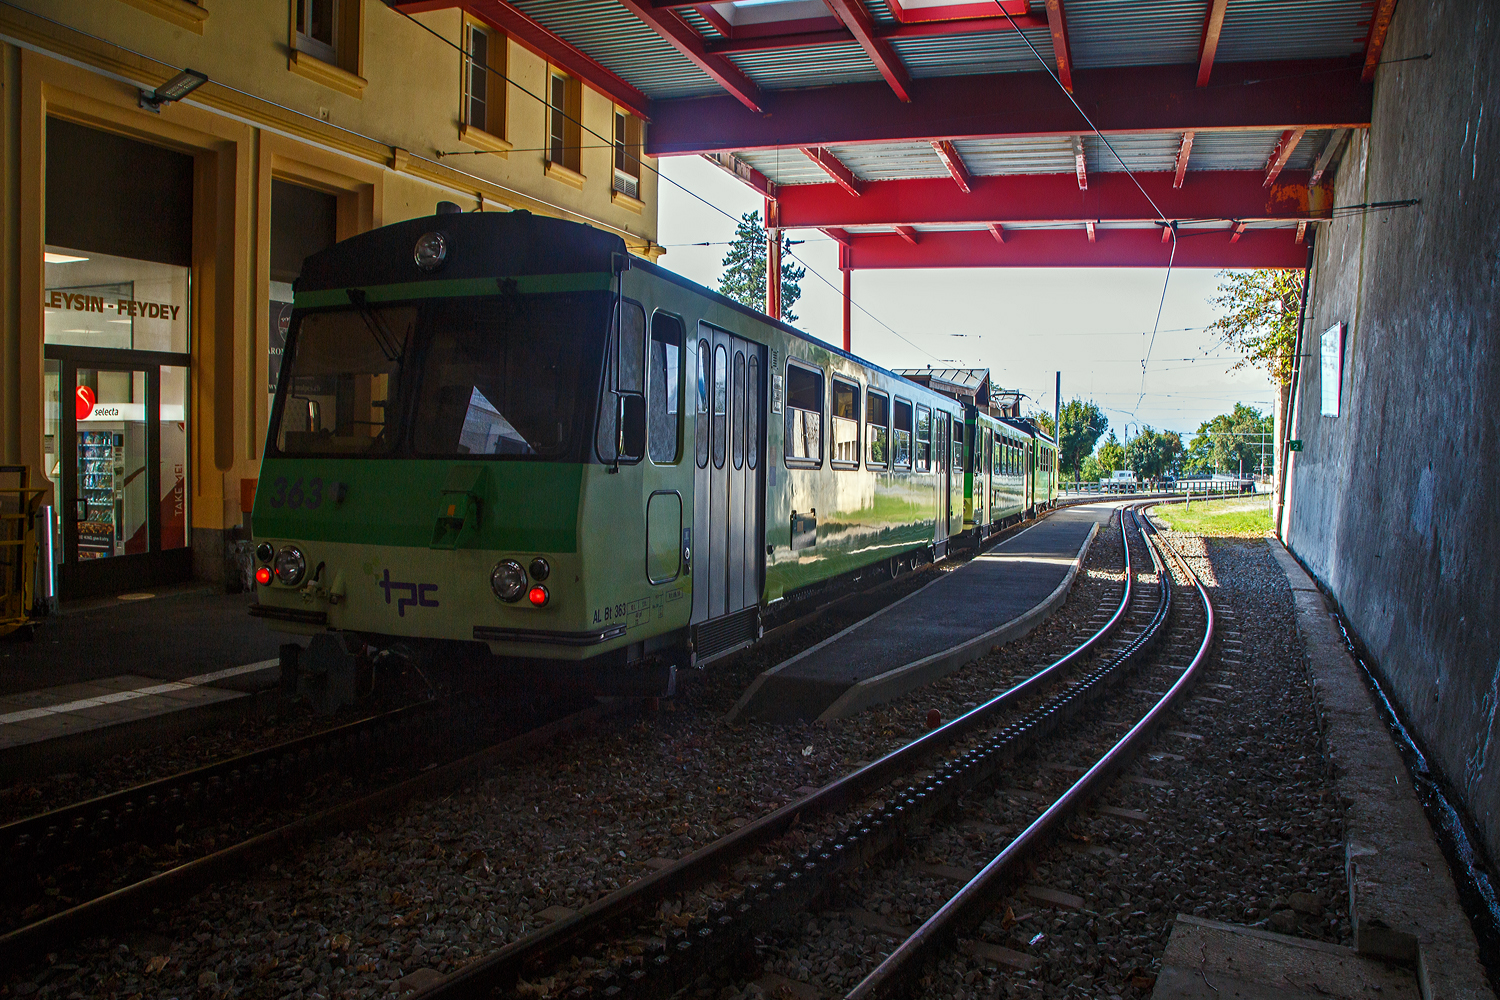 Bei sehr schwierigen Lichtverhltnissen:
Der tpc AL BDeh 4/4 313 „La Berneuse“ (2. Klasse elektrischen Personentriebwagen mit Gepckabteil fr den gemischten Zahnrad- und Adhsionsbetrieb) mit den beiden AL Steuerwagen AL Bt 362 und AL Bt 363 hat am 08 September 2023 vom Leysin - Grand-Htel kommend die Station Leysin-Feydey erreicht. Der dreiteilige Zug fhrt als Regionalzug (R 25) von Leysin - Grand-Htel nach Aigle.

Hinweis: Fr das berschreiten das Gleises fr Foto habe ich hier die Stationsvorsteher und den Triebfahrzeugfhrer gefragt, die mir es das erlaubt haben. 